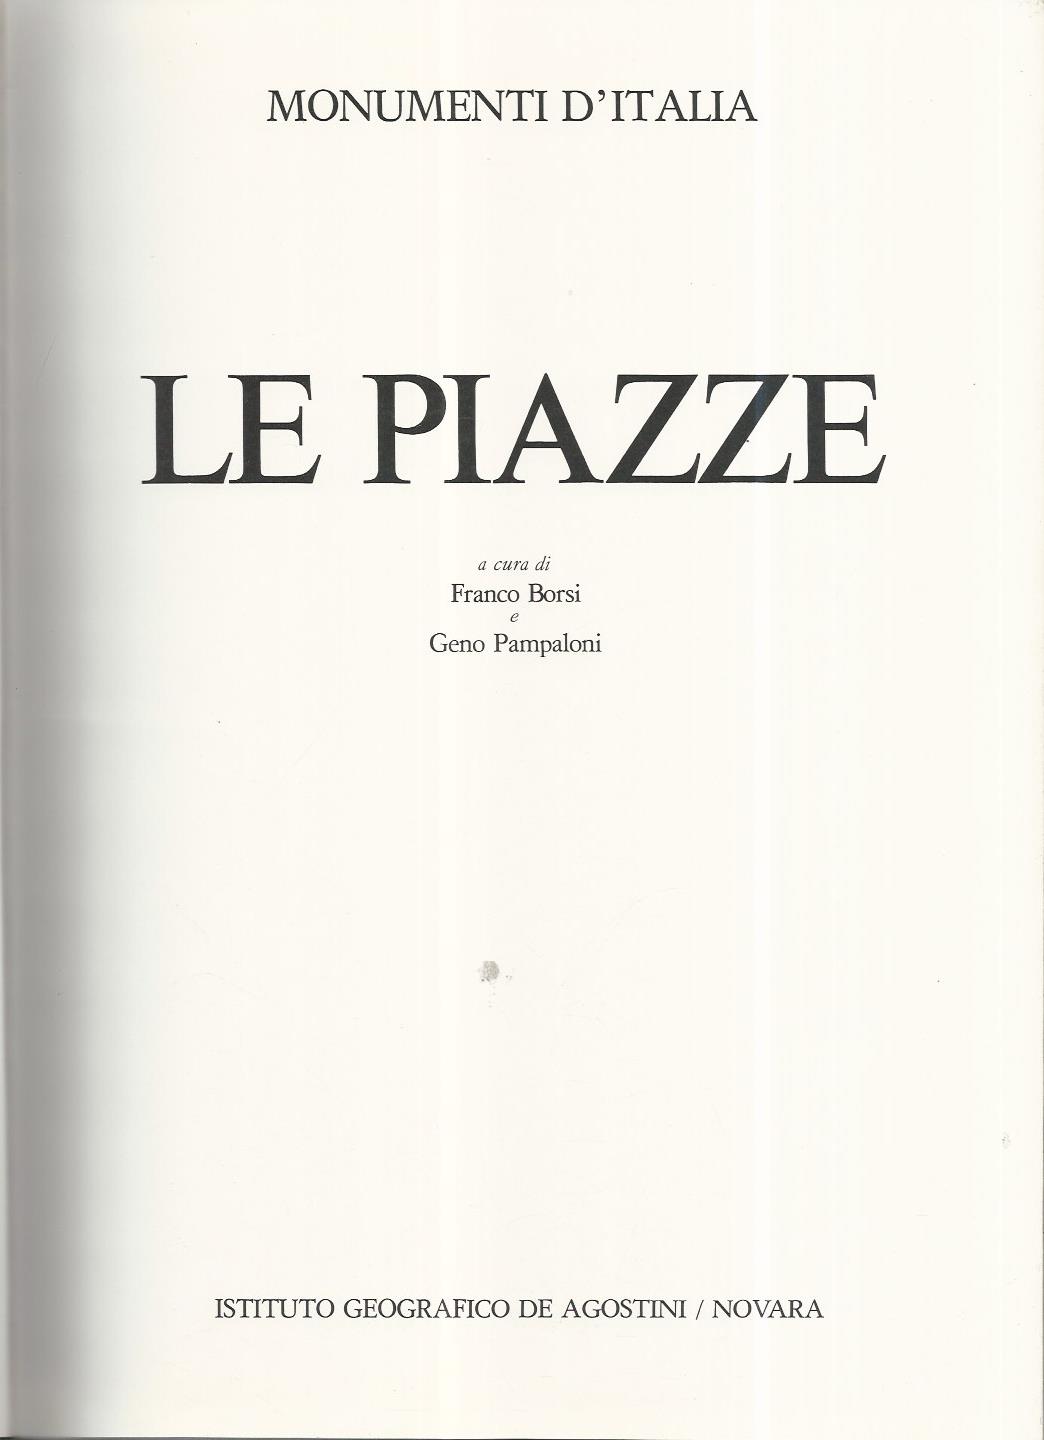 Le piazze by Franco Borsi - Geno Pampaloni: Buono (Good) | librisaggi